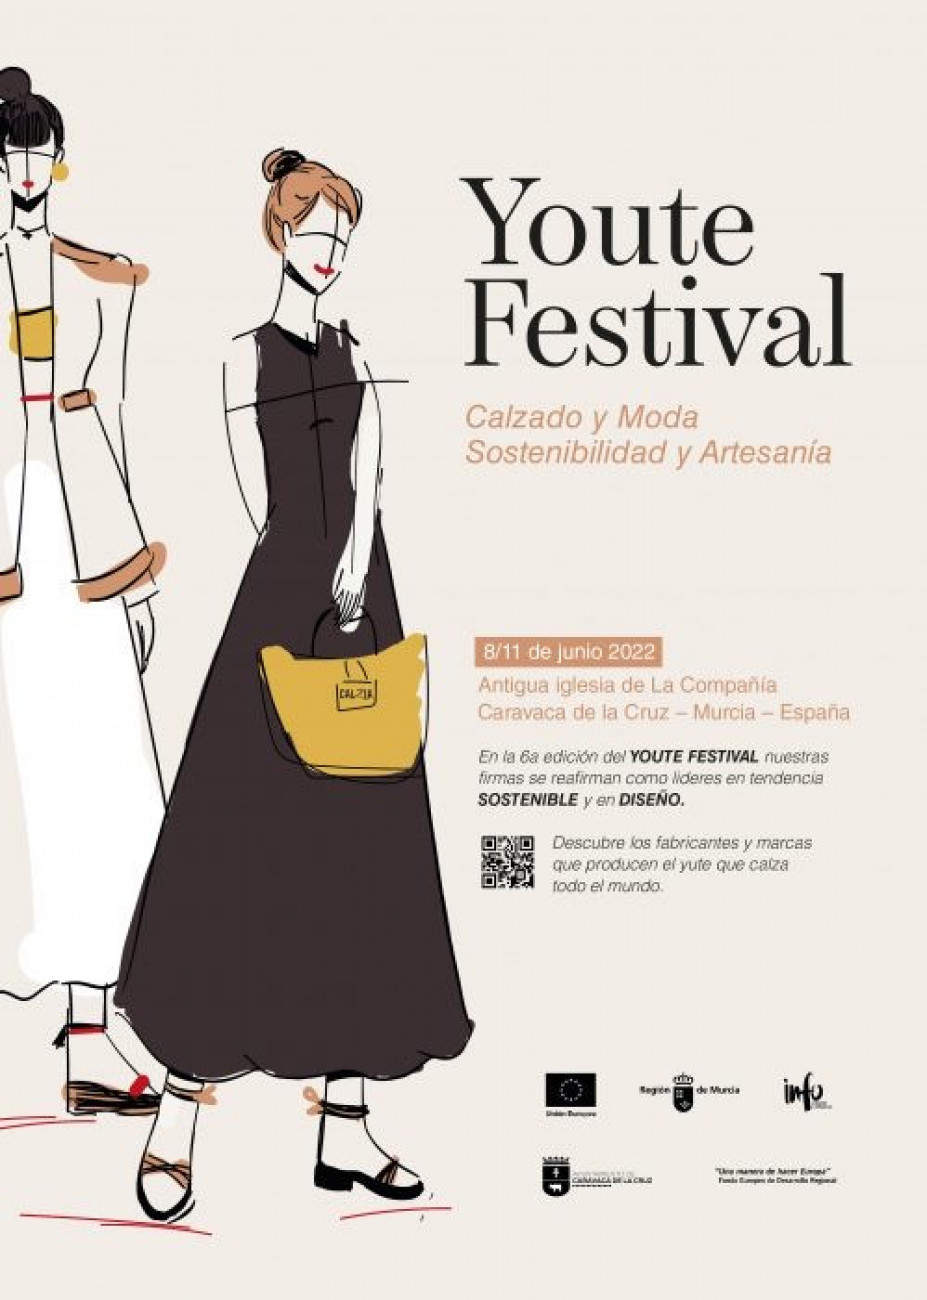 08-11-06. Festival Youte 2022.JPG